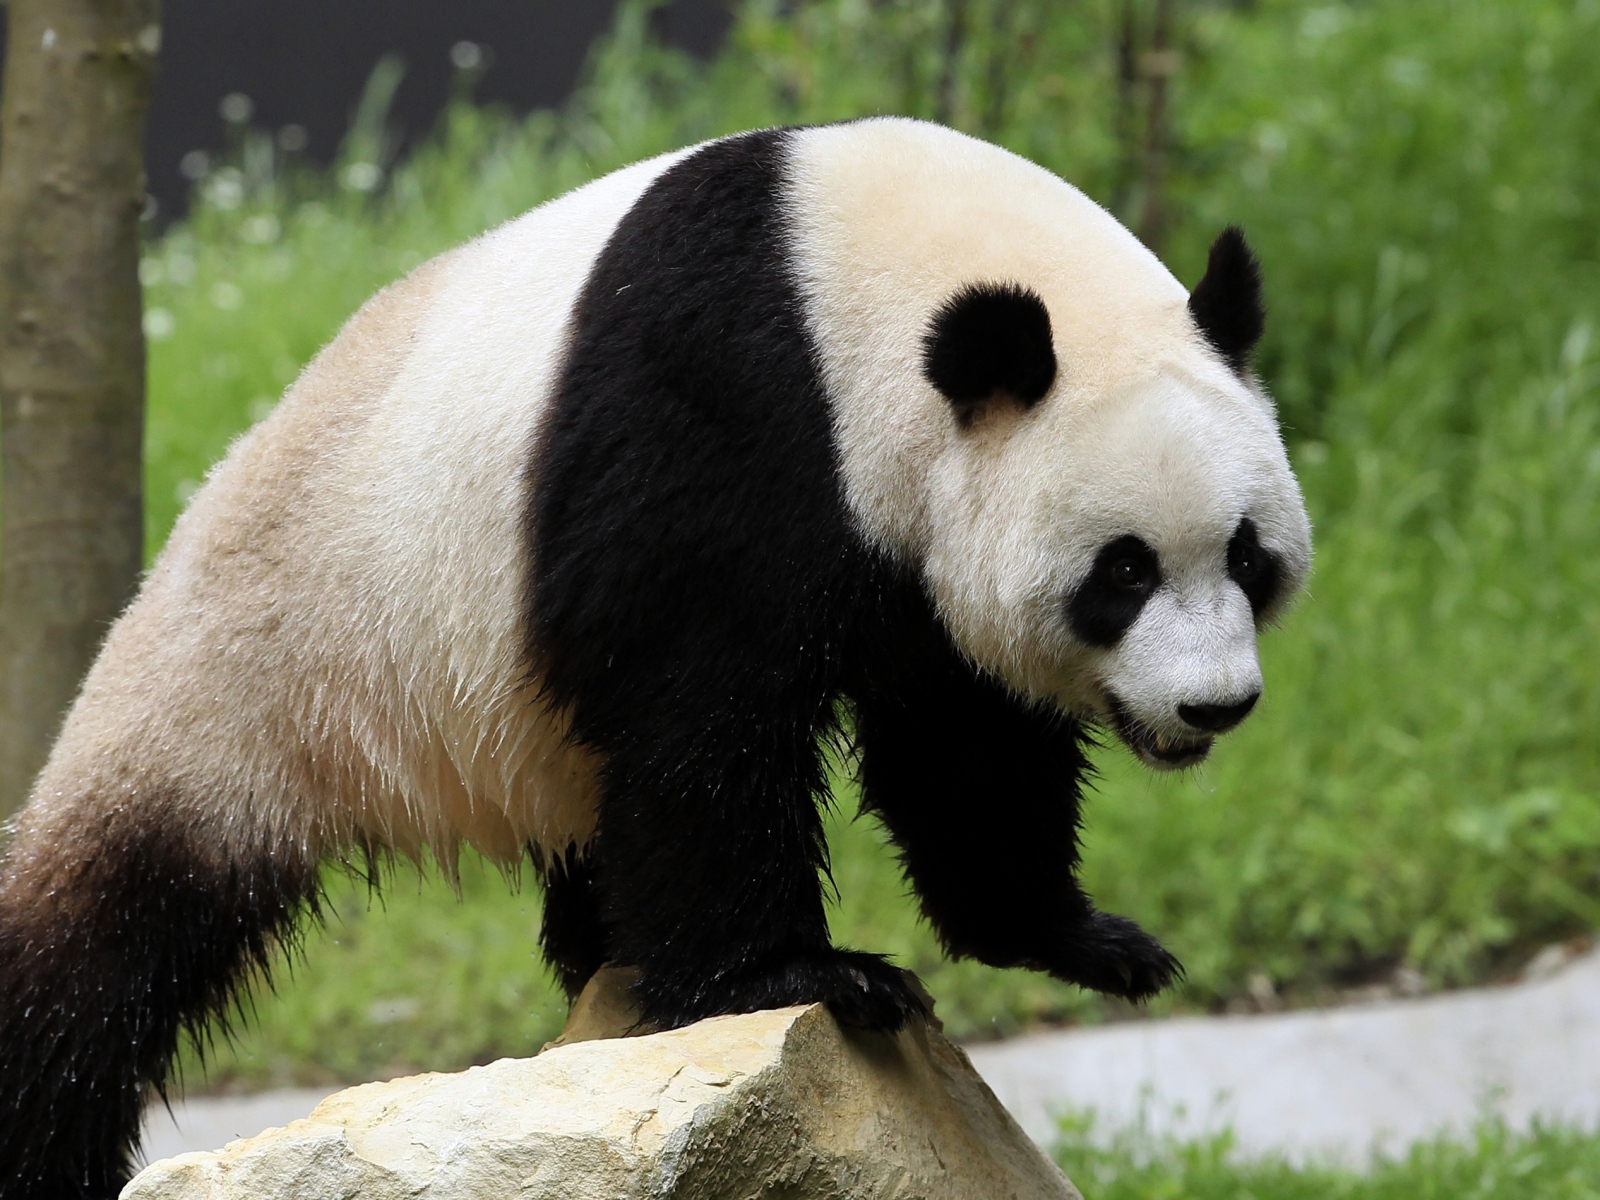 Wet big panda bear stands on a rock